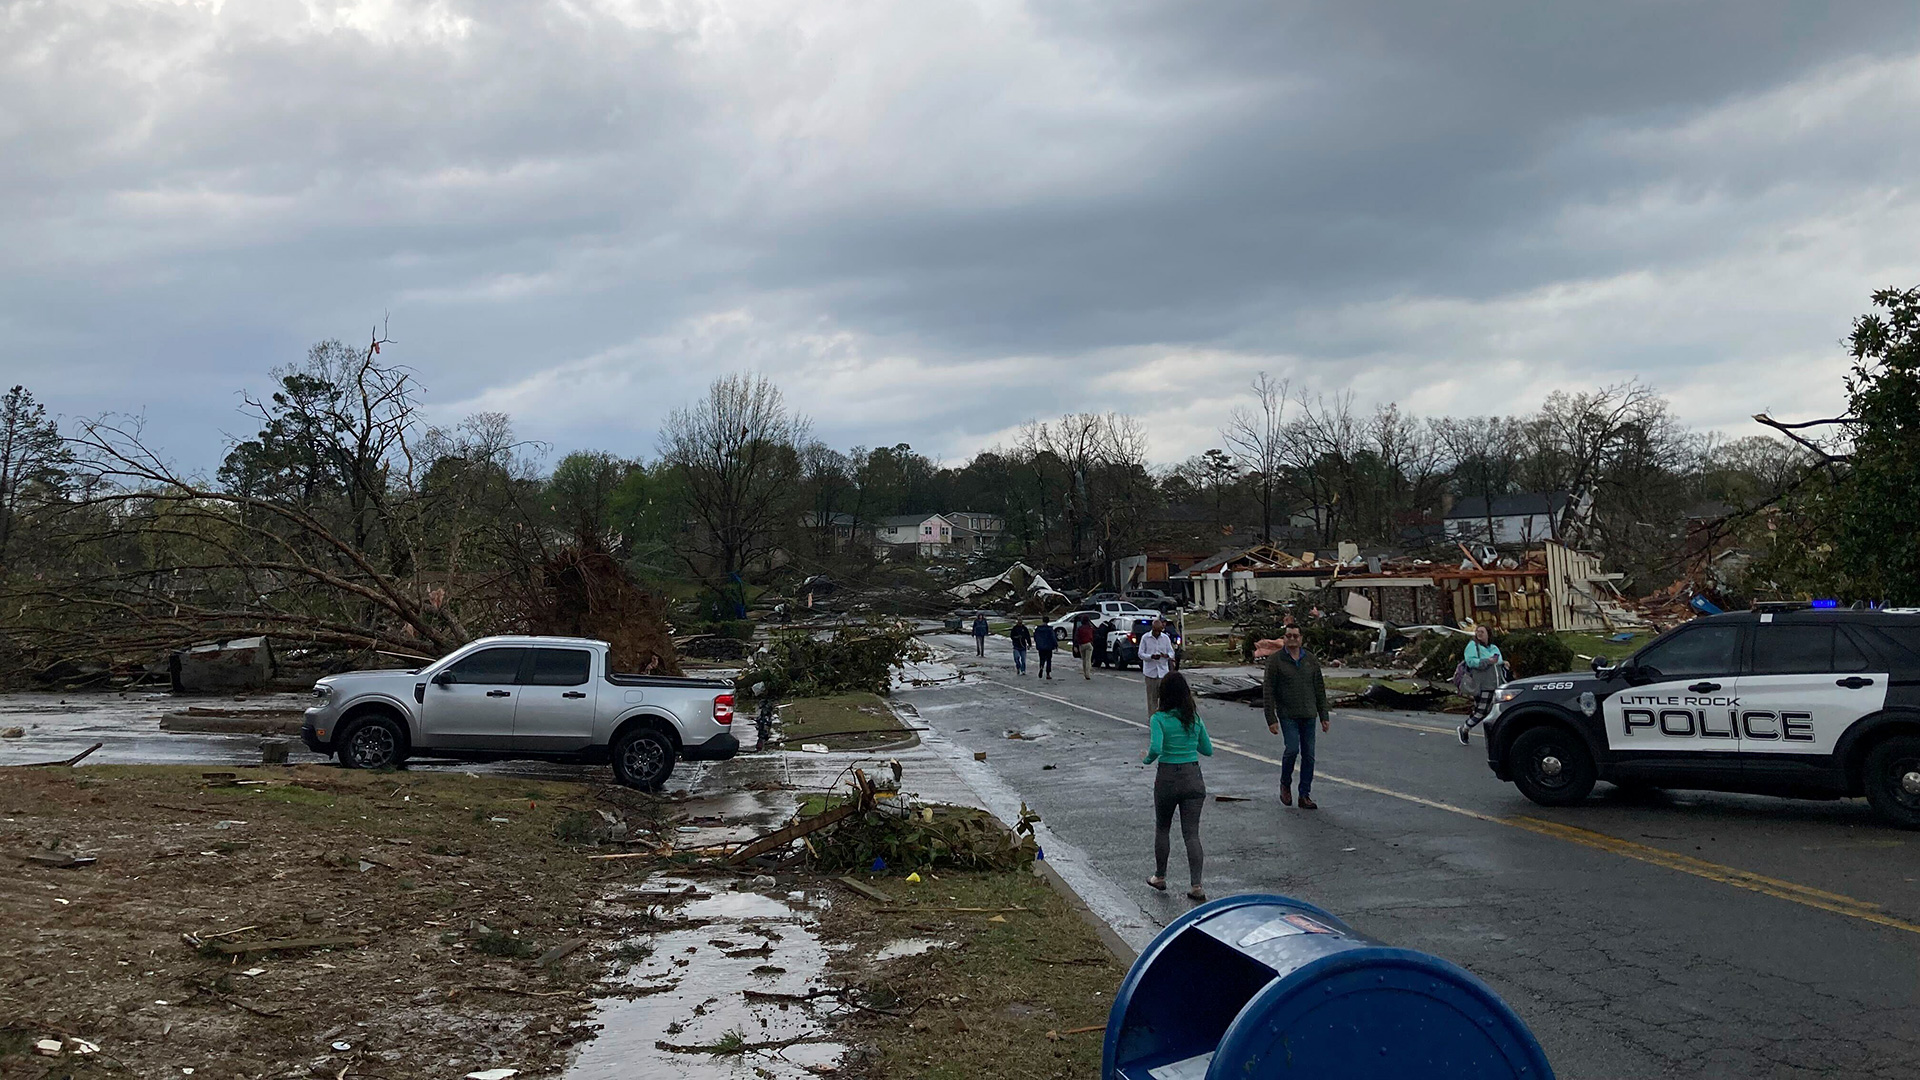 Residentes molinan después de que una fuerte tormenta arrasara Little Rock, Arkansas, el viernes 31 de marzo de 2023 (AP Photo/Andrew DeMillo)